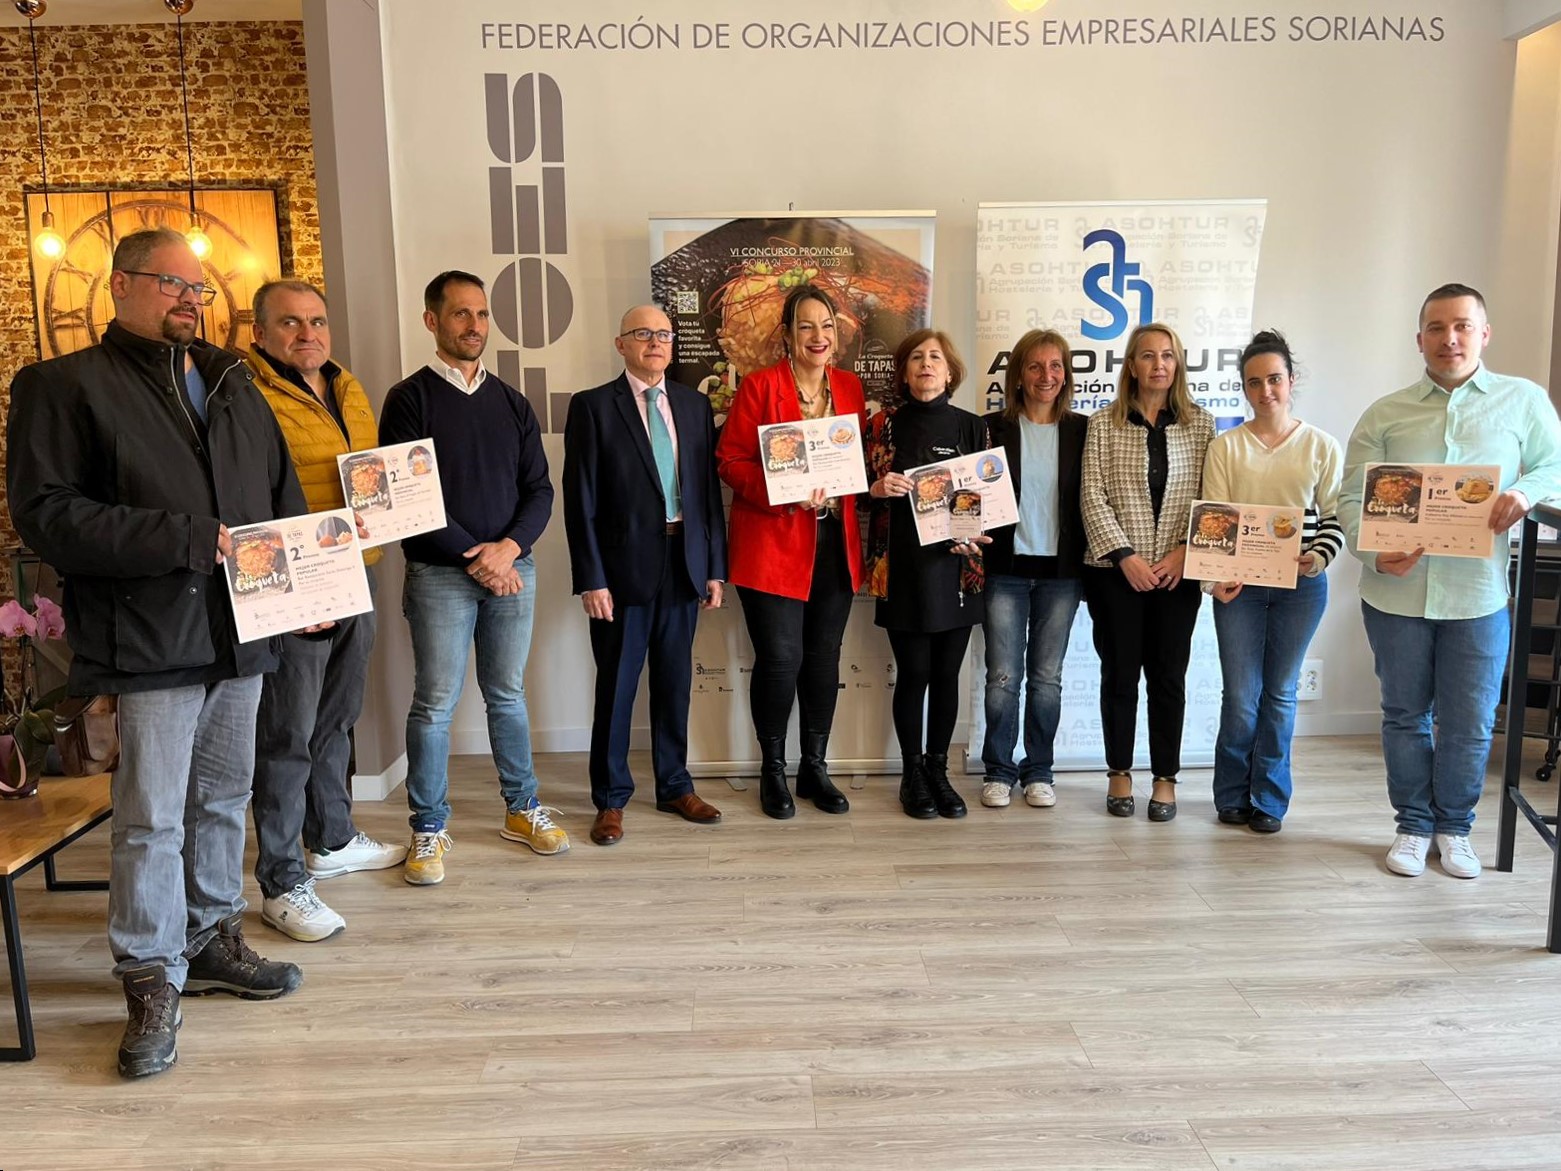 Los Villares elabora la mejor croqueta de la provincia de Soria